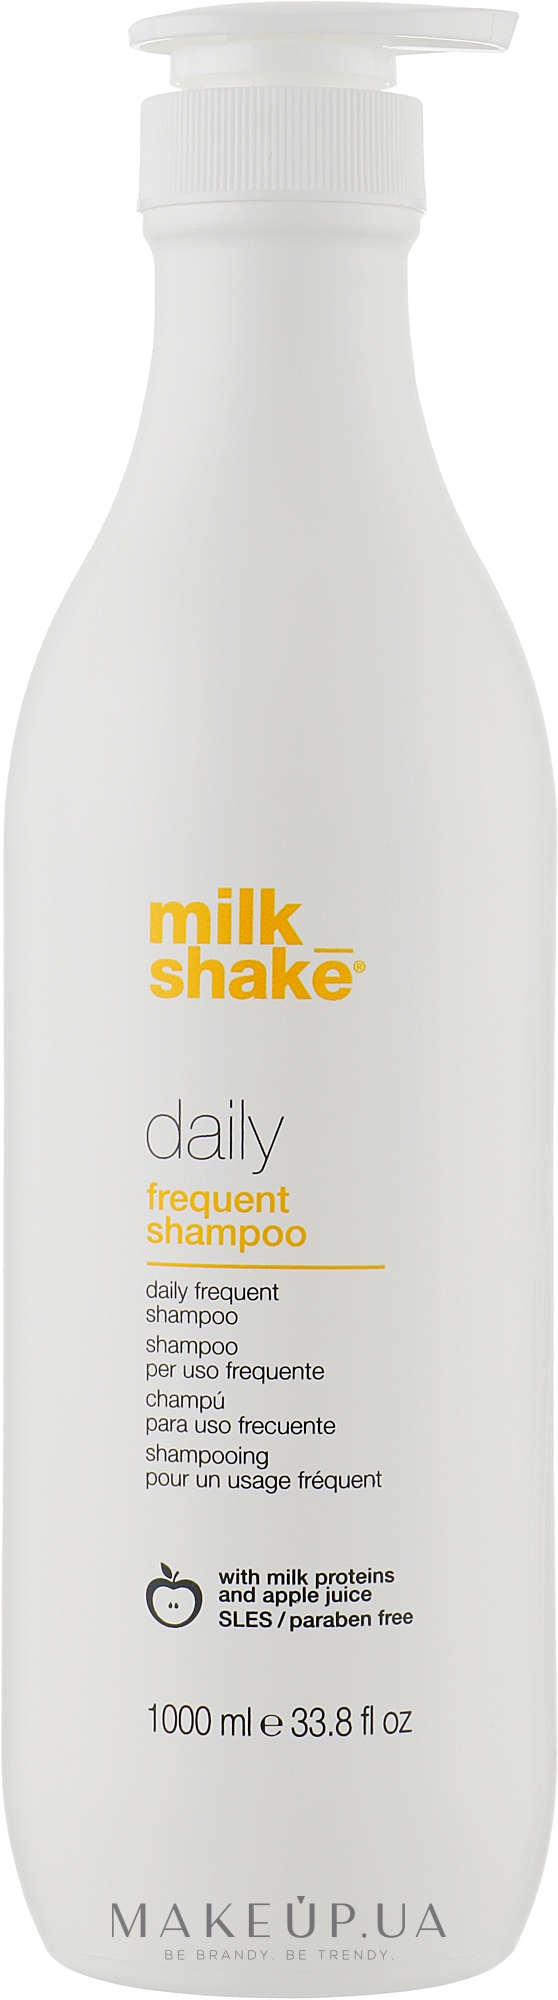 Шампунь для ежедневного применения - Milk_Shake Daily Frequent Shampoo — фото 1000ml